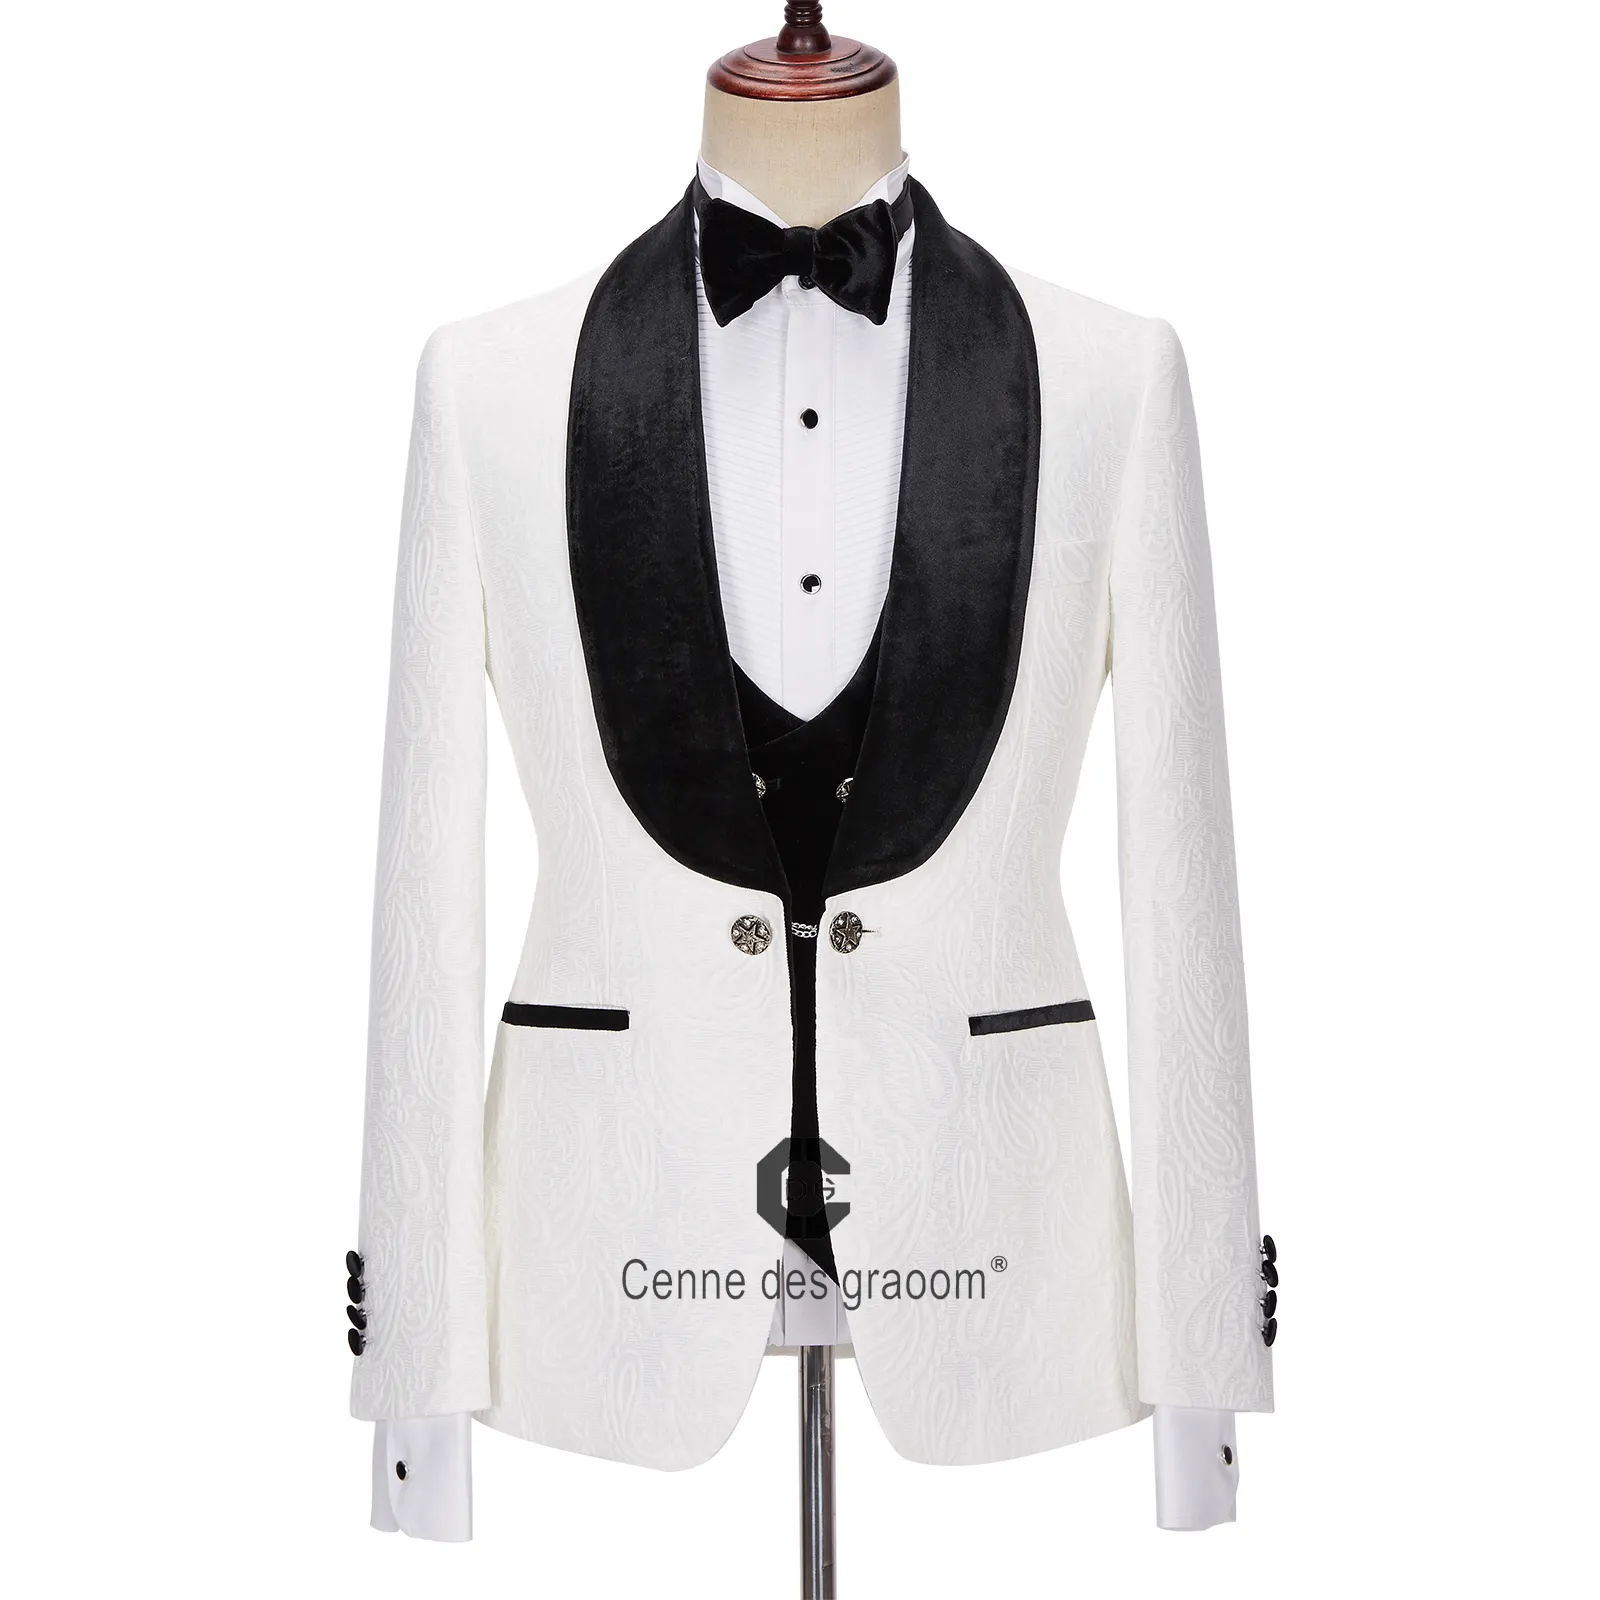 Cenne des graoom Slim Fit Suit Black Wedding Suit Blazer Jacket pant coat design men wedding suits pictures Tuxedo